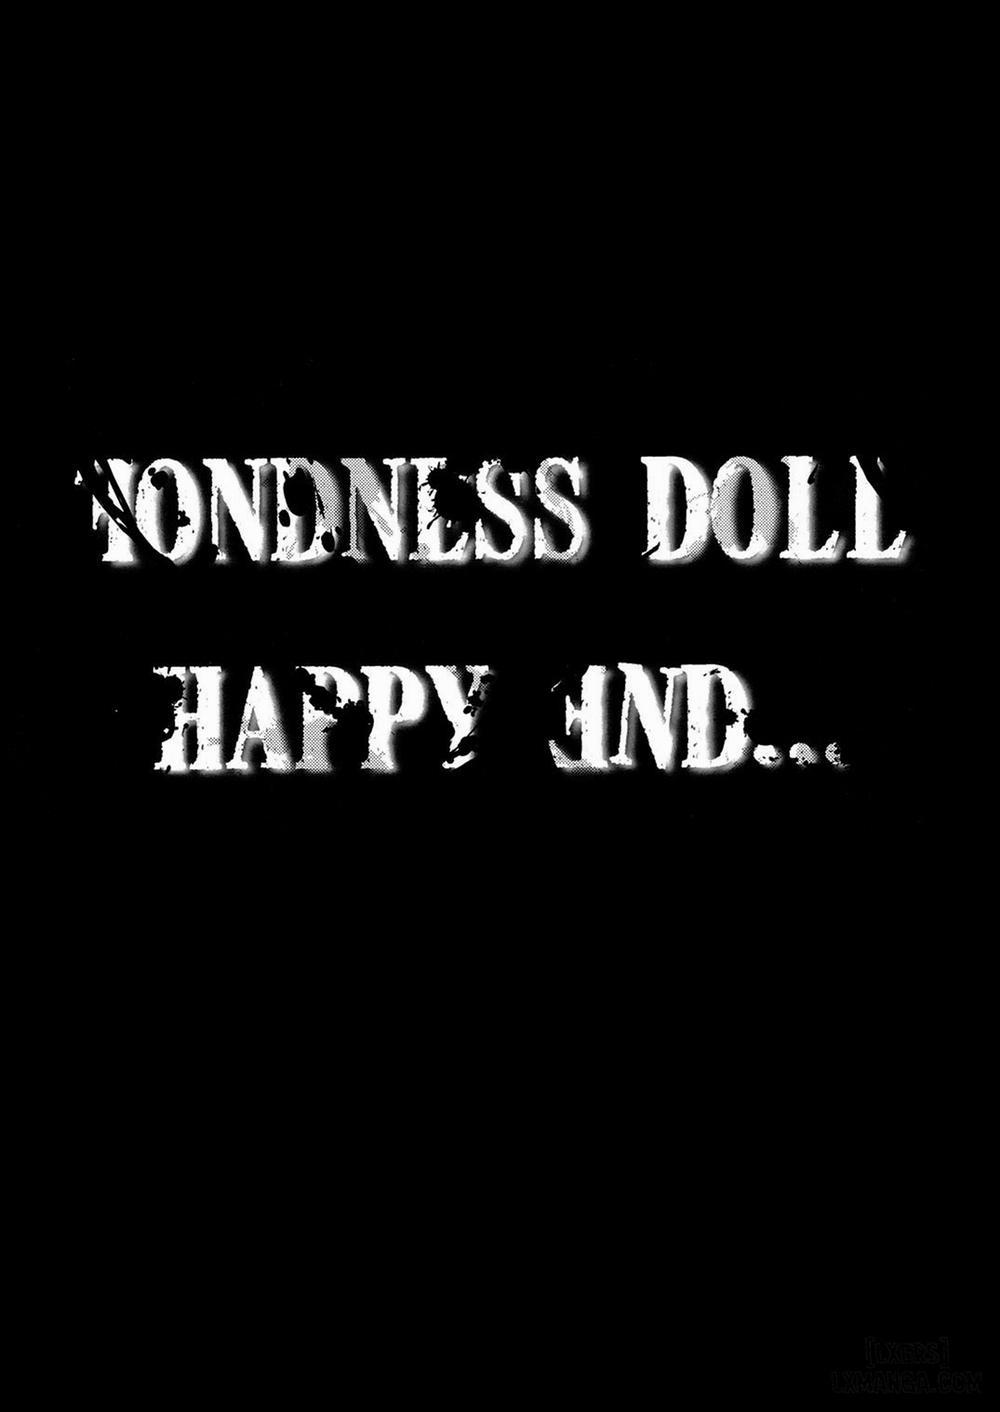 Fondness Doll Happy END Chương Oneshot Trang 48